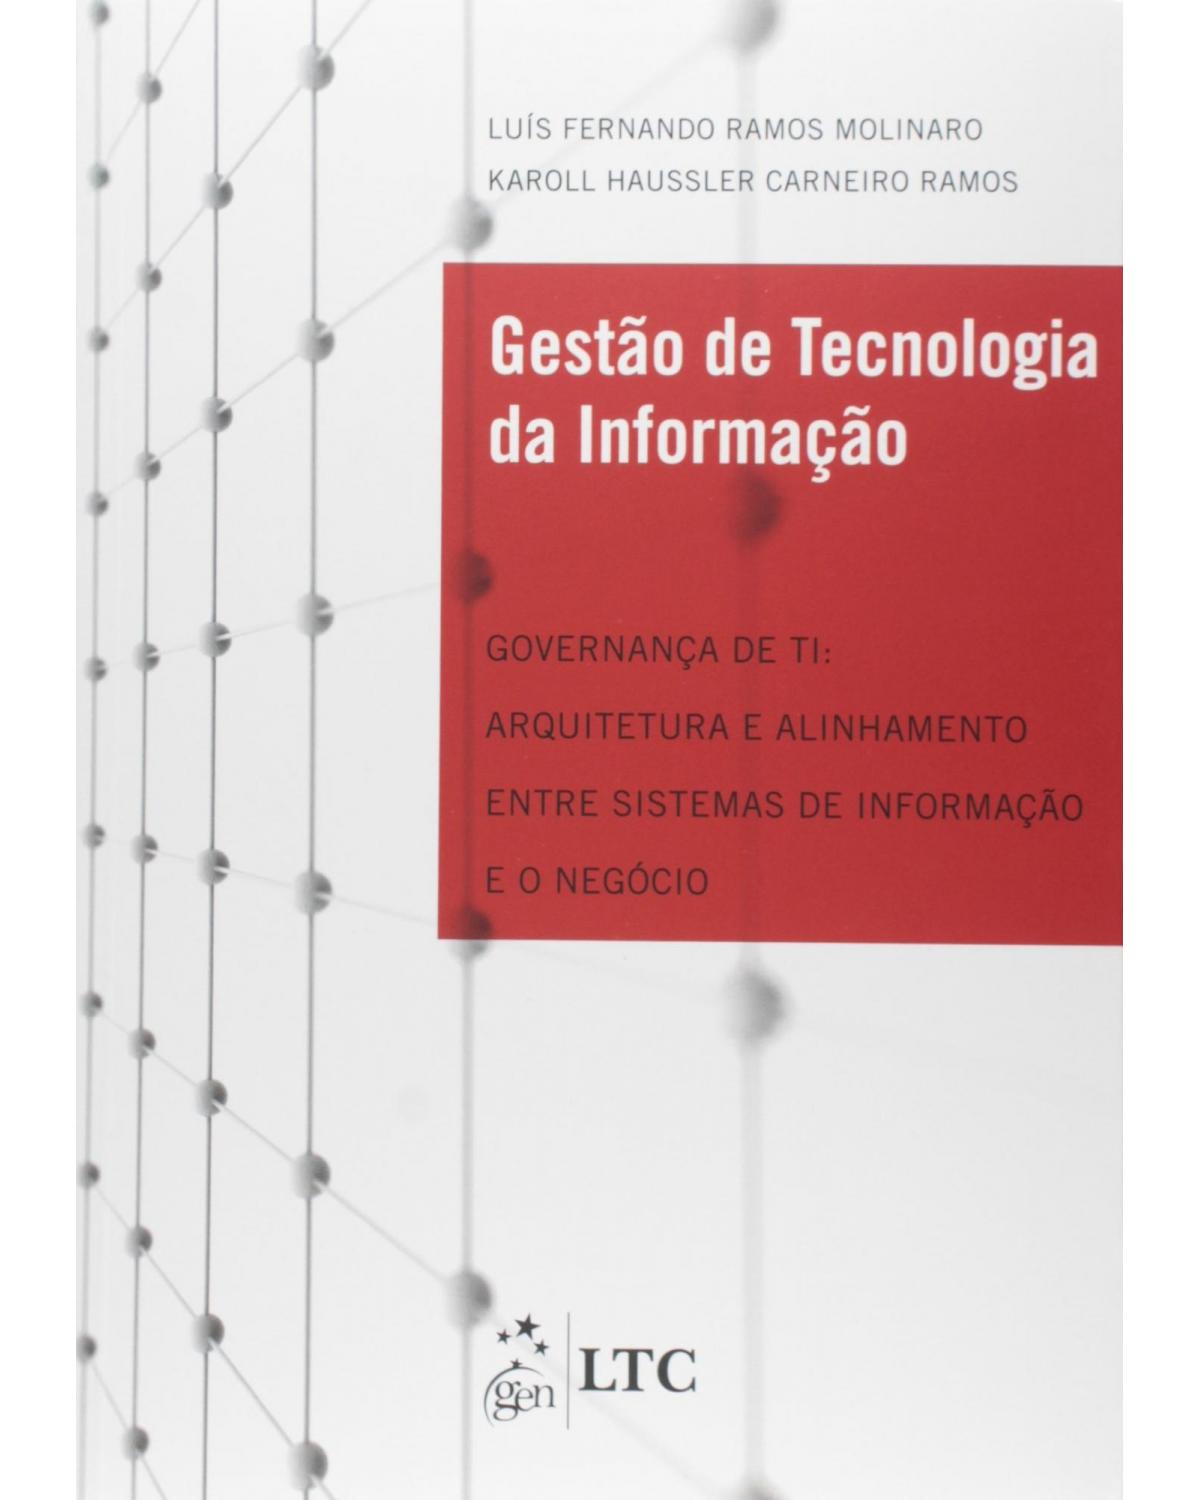 Gestão de tecnologia da informação - Governança de TI - Arquitetura e alinhamento entre sistemas de informação e o negócio - 1ª Edição | 2011